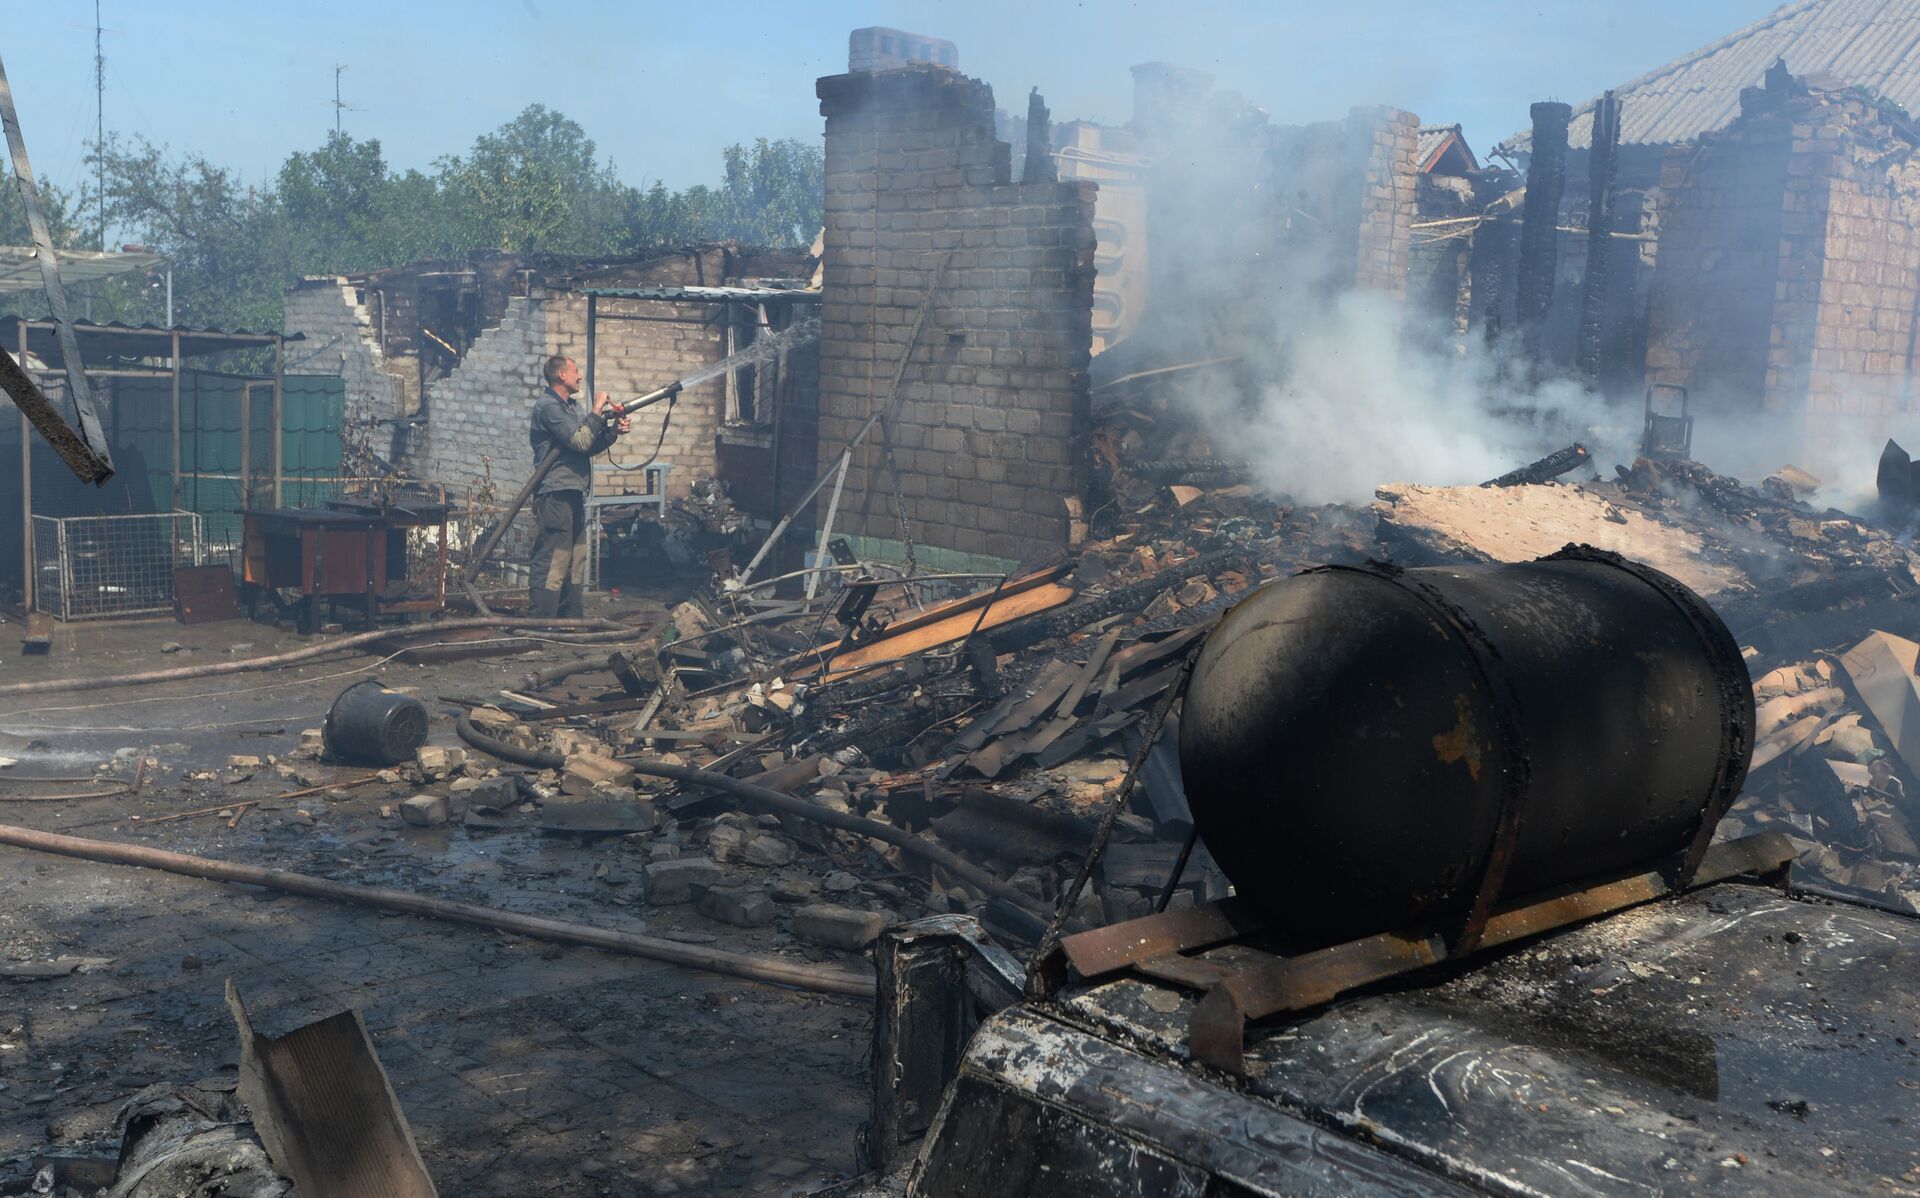 Uništene privatne kuće nakon što je ukrajinska vojska granatirala selo Gorlovka u Donbasu - Sputnik Srbija, 1920, 13.07.2021